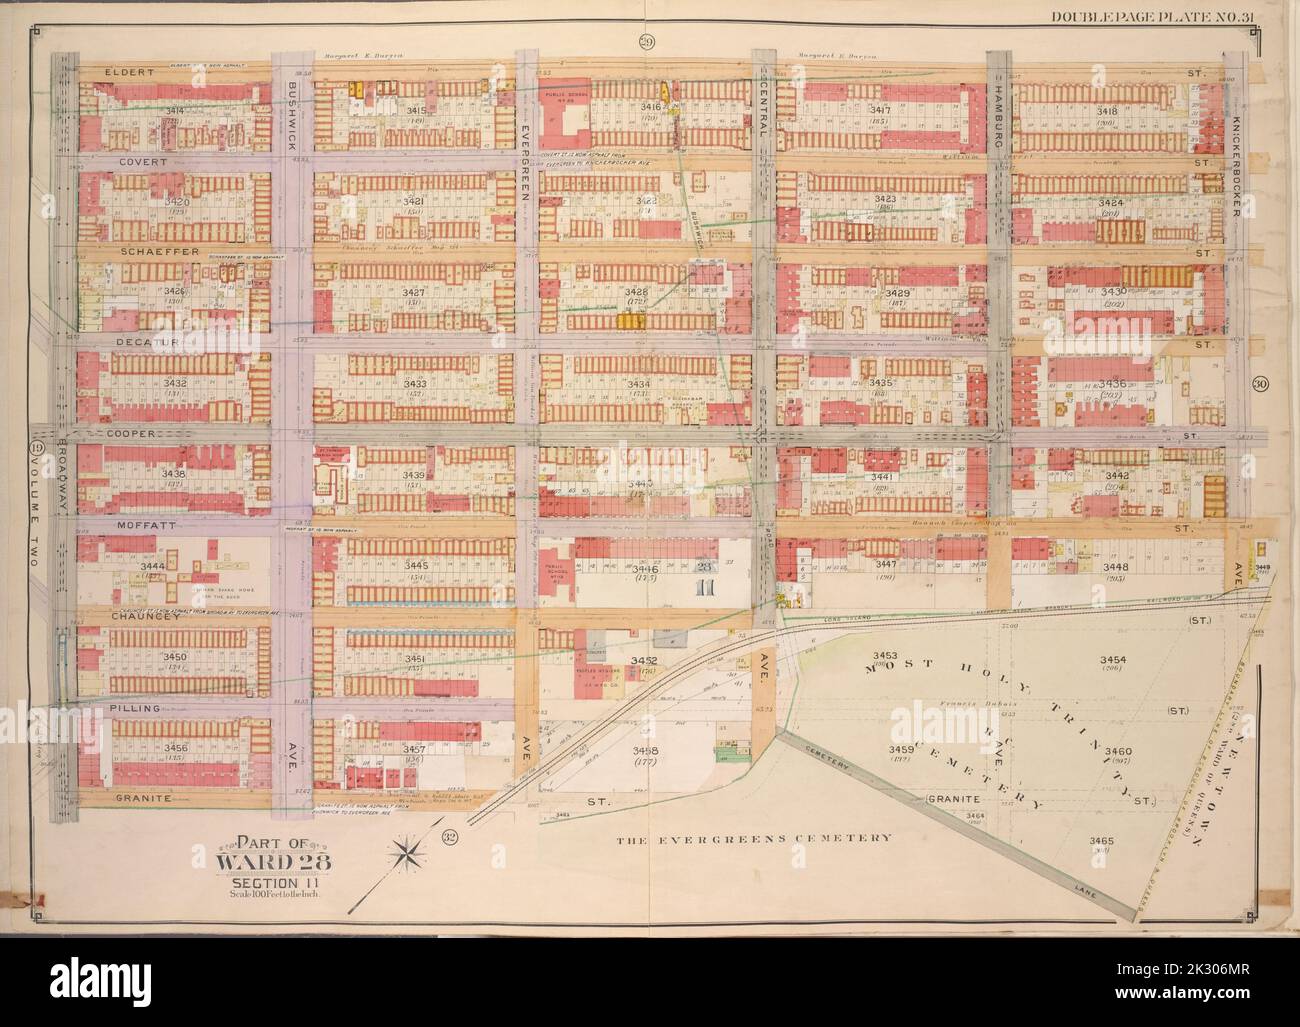 E.B. Hyde & Co.. Cartografica, Mappe. 1904 - 1912. Lionel Pincus e la Principessa Firyal Map Division. Brooklyn (New York, N.Y.) , Mappe, Real Property , New York (Stato) , New York Brooklyn, Vol. 3, Double Page Plate No. 31; parte di Ward 28, Sezione 11; Mappa delimitata da Eldert St., Knickerbocker Ave.; incluso Granite St., Broadway Foto Stock